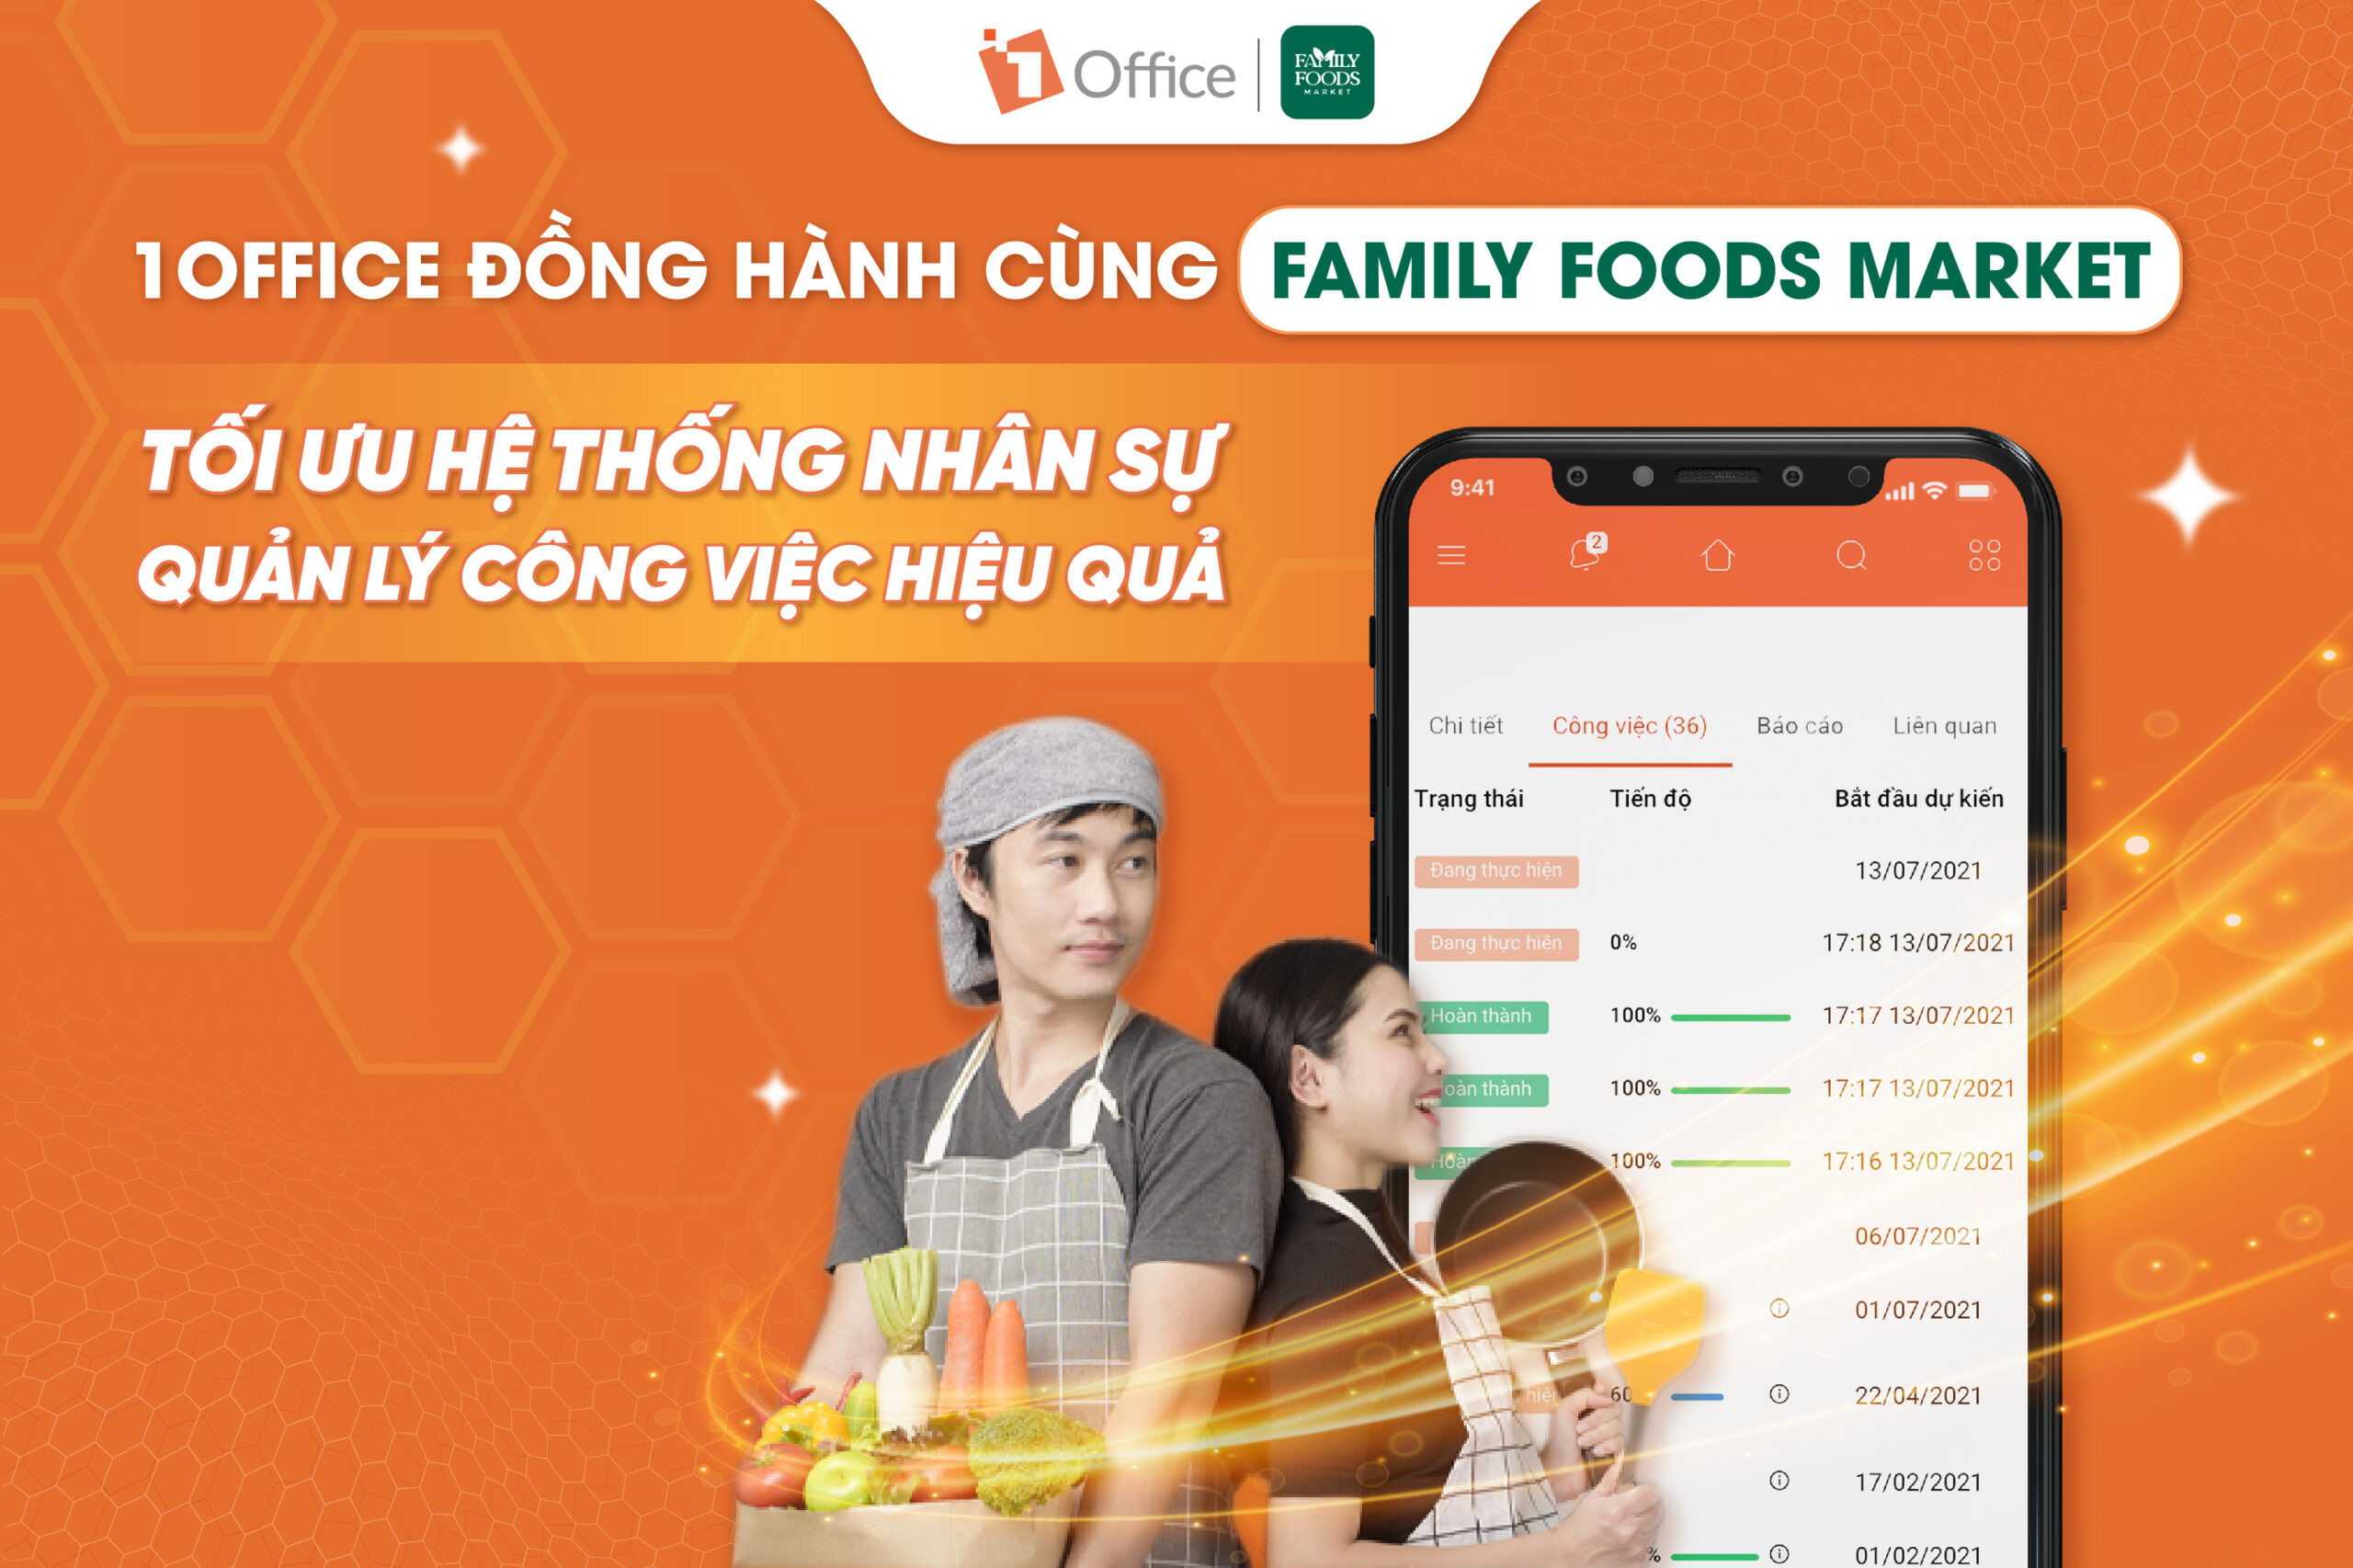 1Office đồng hành cùng Family Foods Market tối ưu hệ thống nhân sự, quản lý công việc hiệu quả